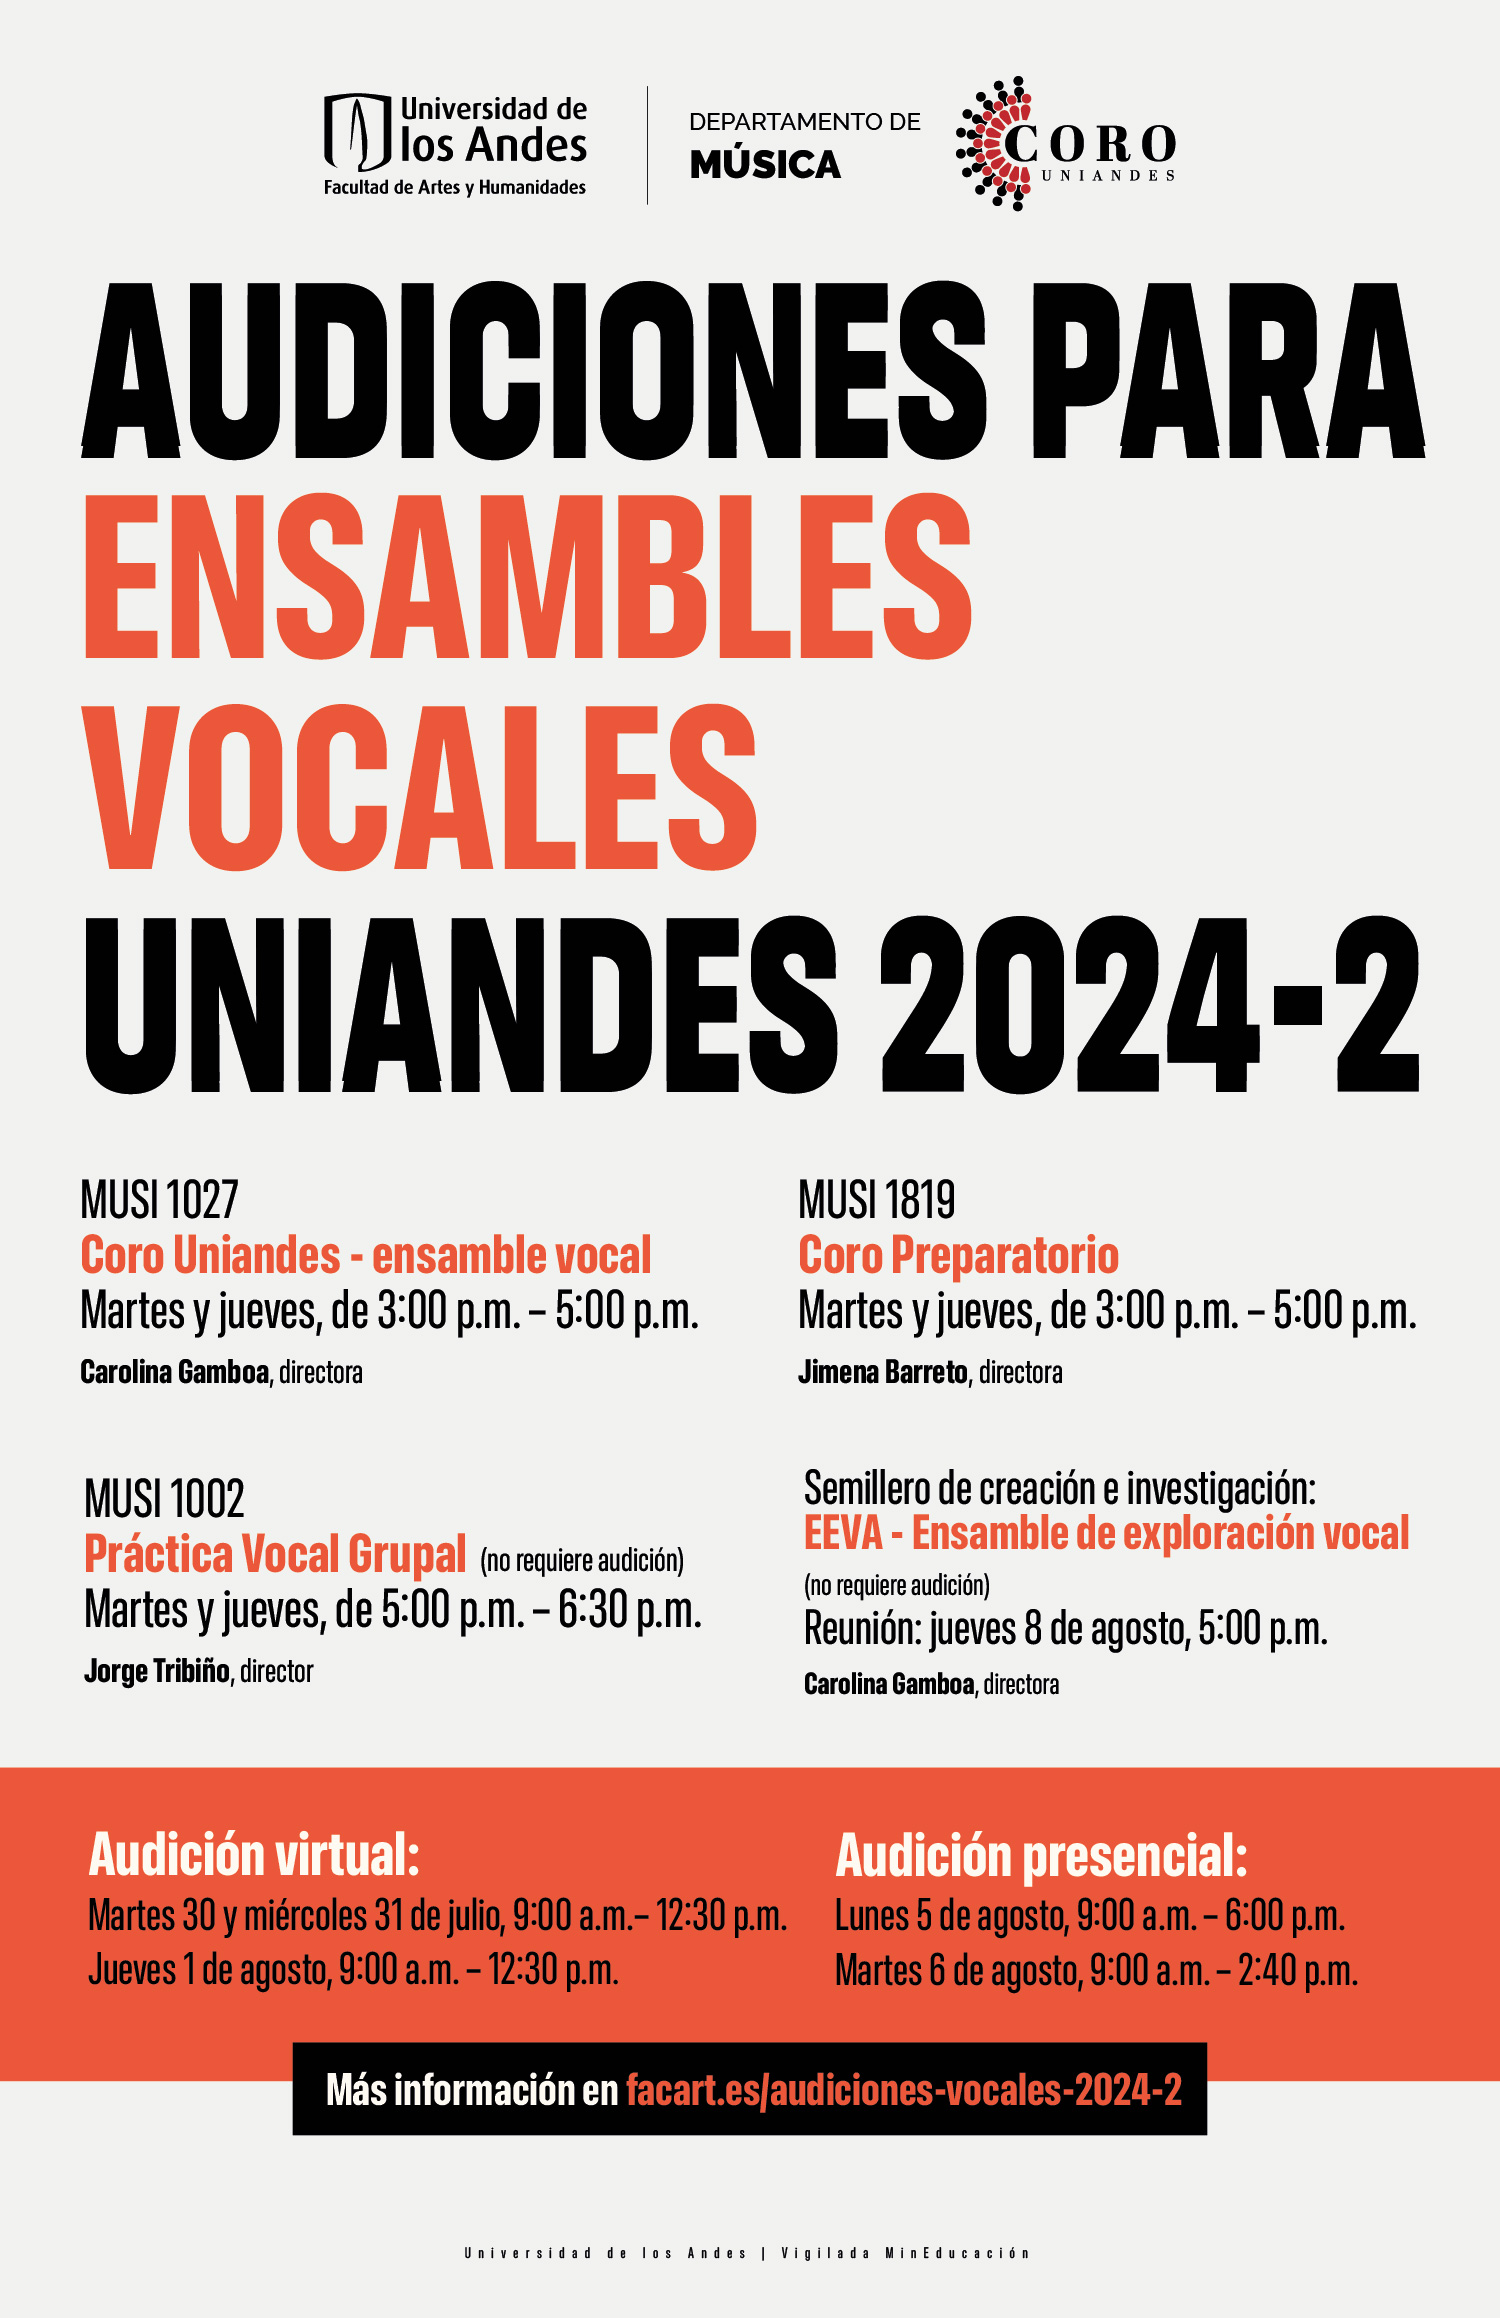 Audiciones para ensambles vocales Uniandes en 2024-2